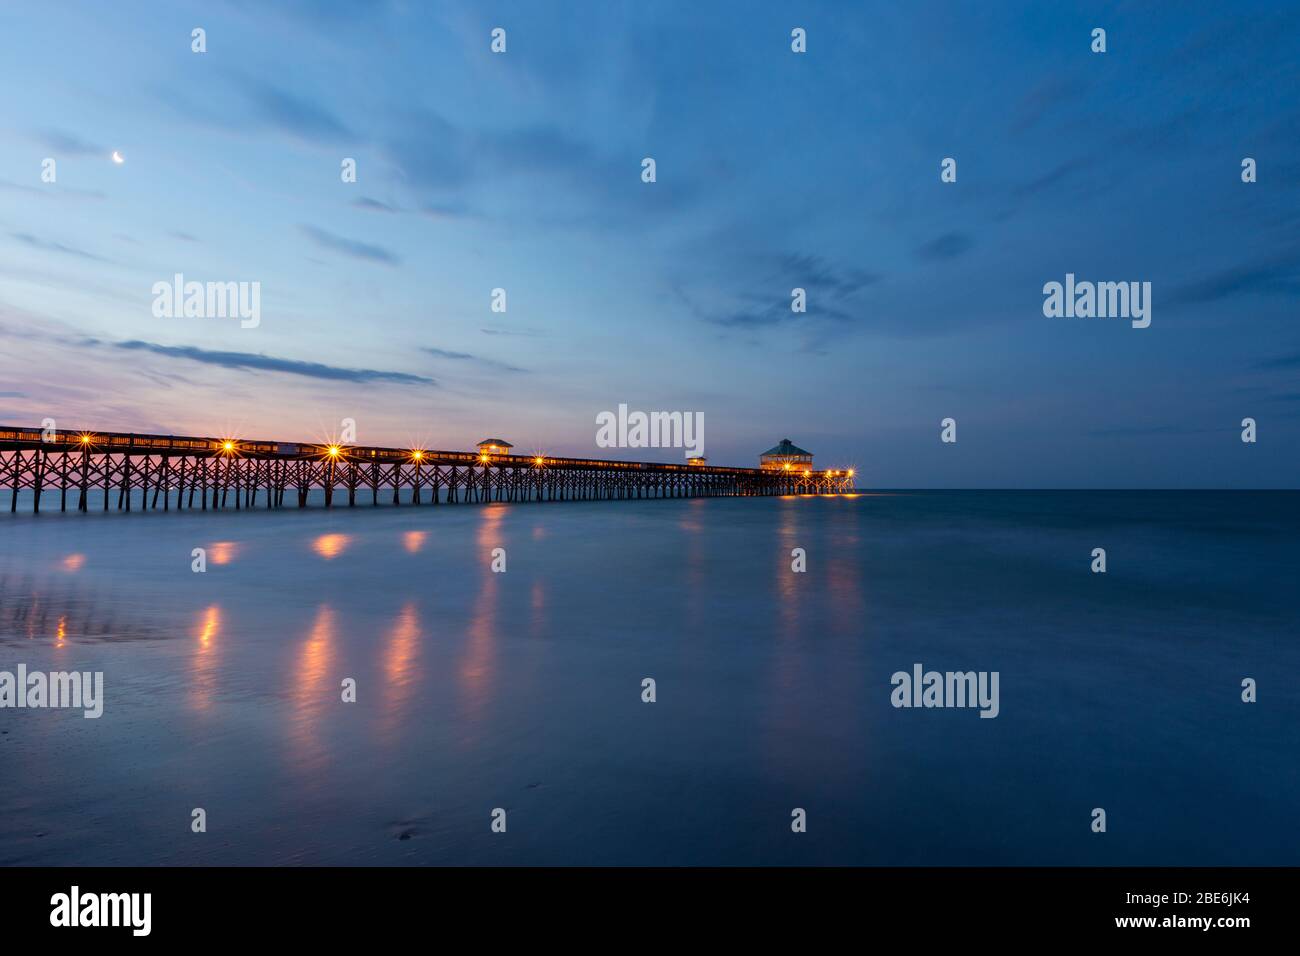 Folly Beach Pier at dawn Stock Photo